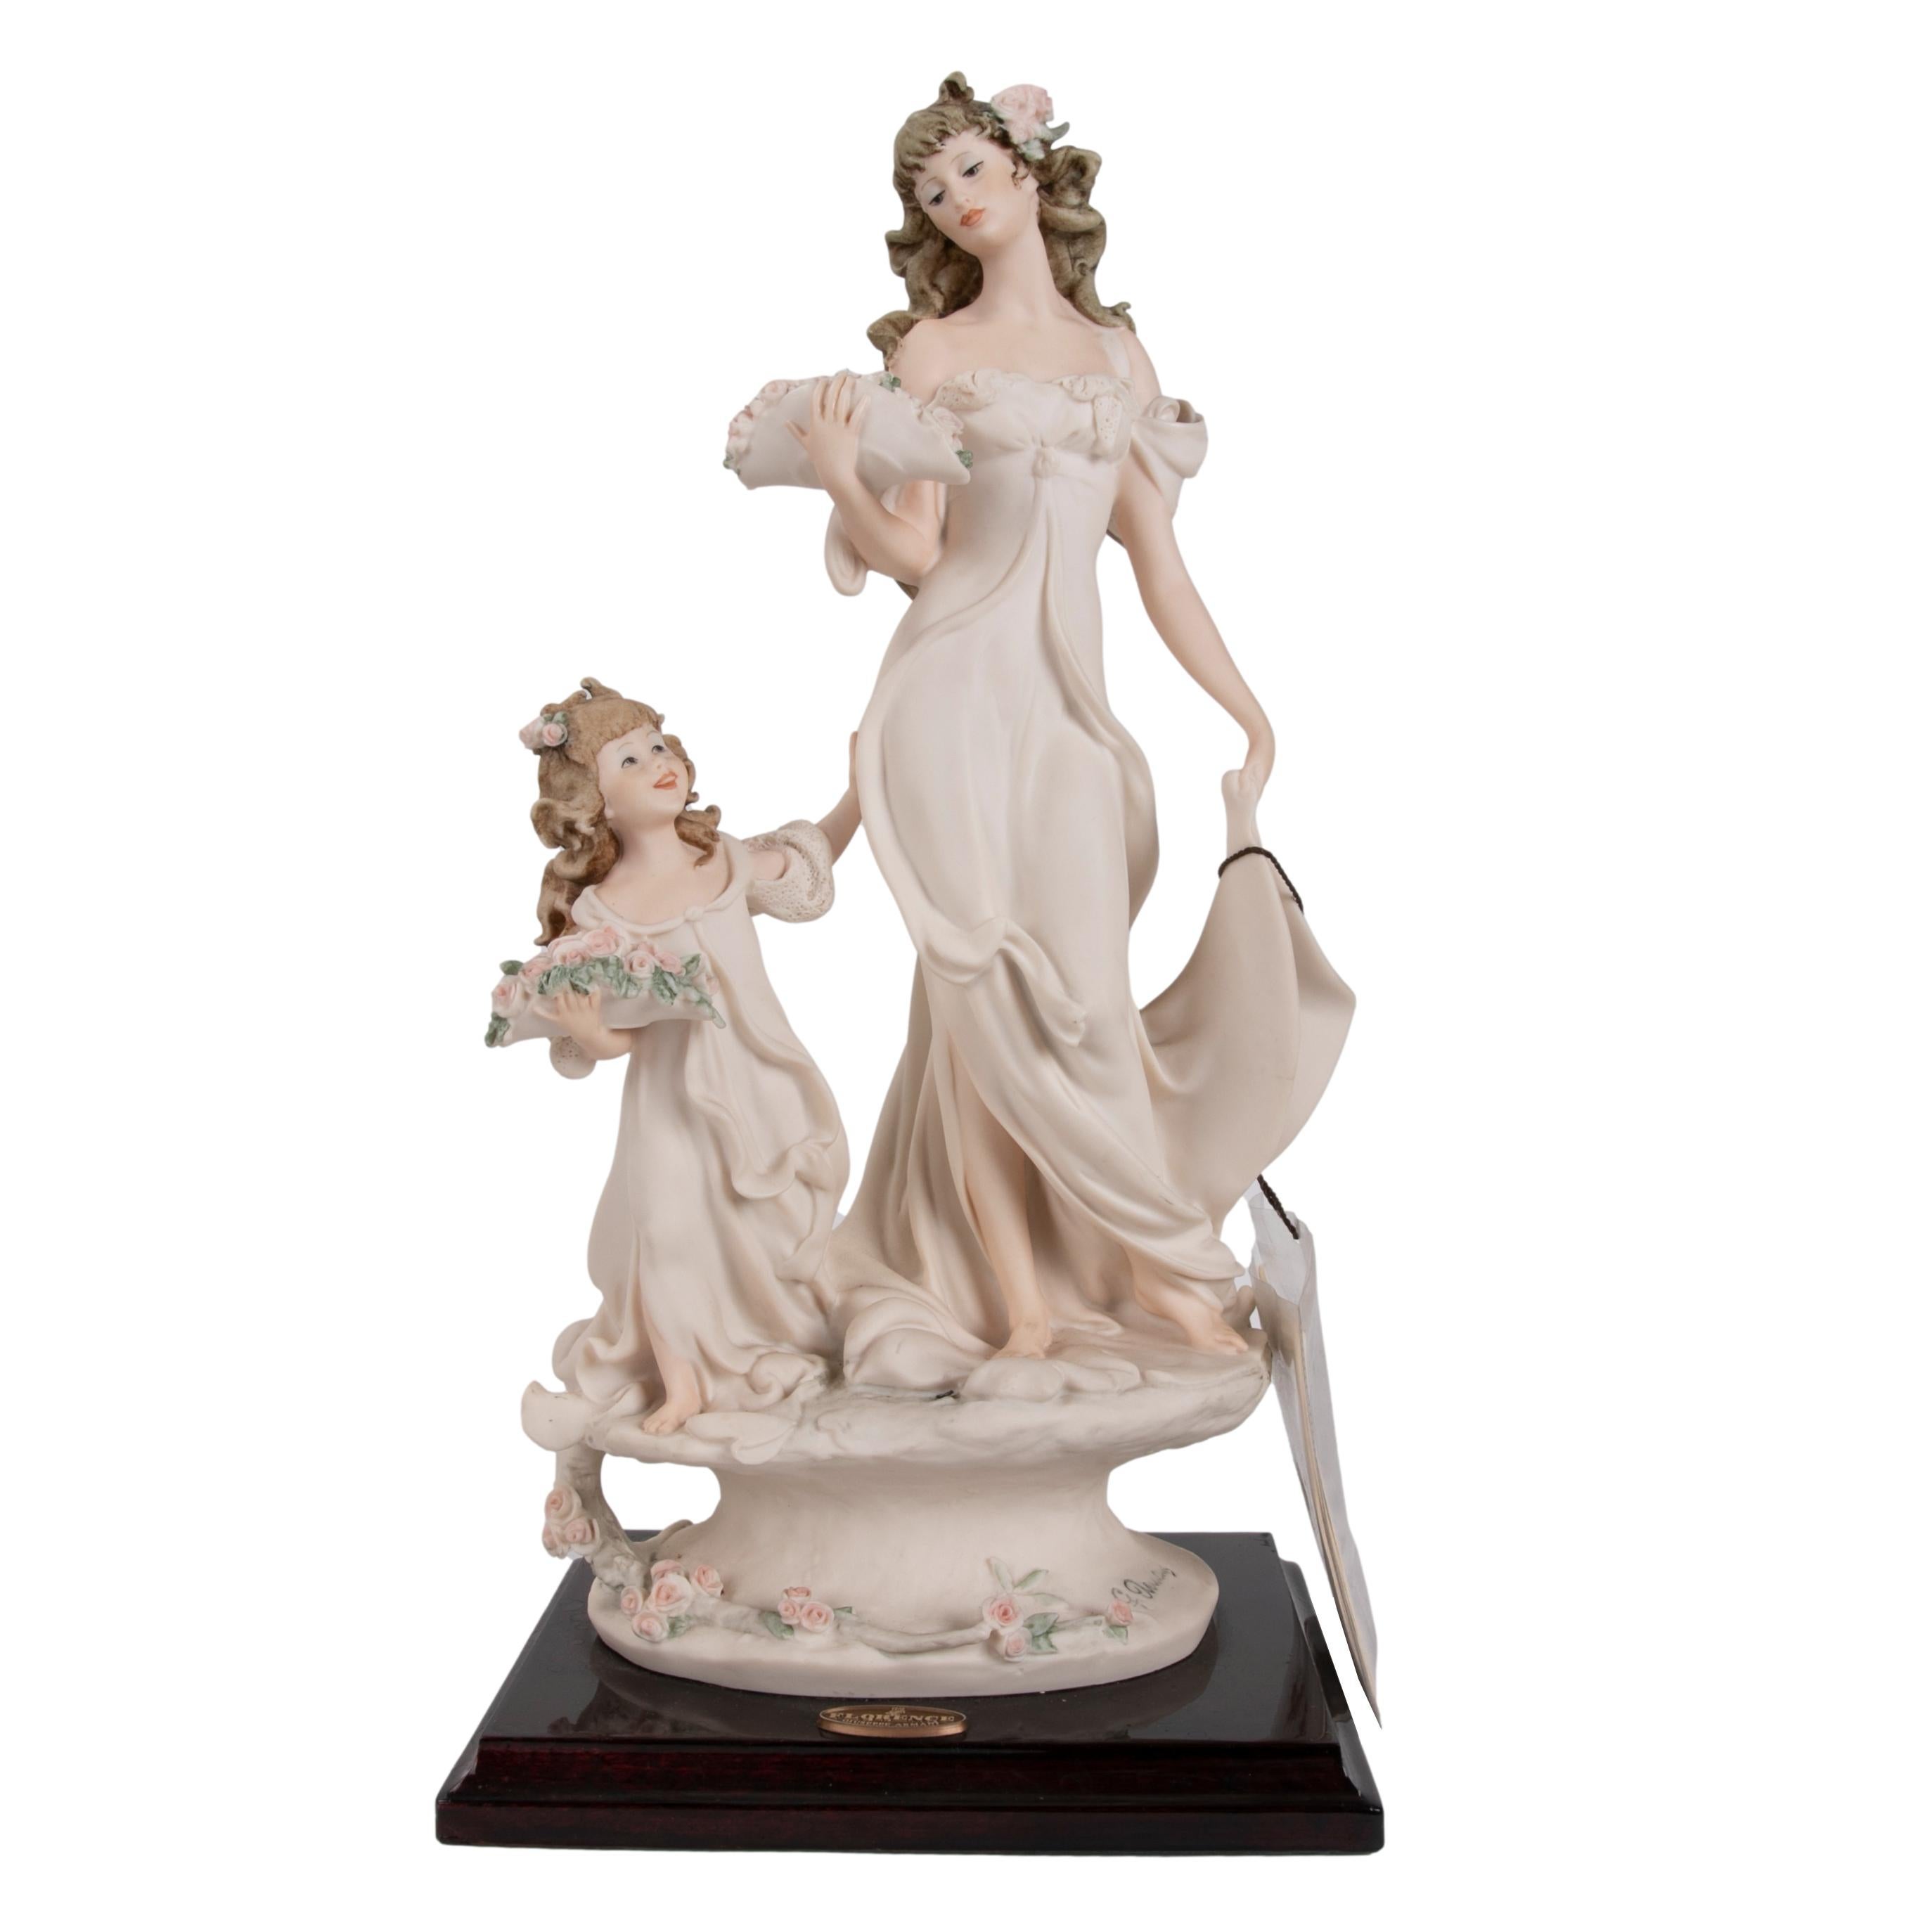 Giuseppe Armani Figurines - 4 For Sale on 1stDibs | where can i sell my giuseppe  armani figurines, giuseppe armani figurines for sale, g armani statues